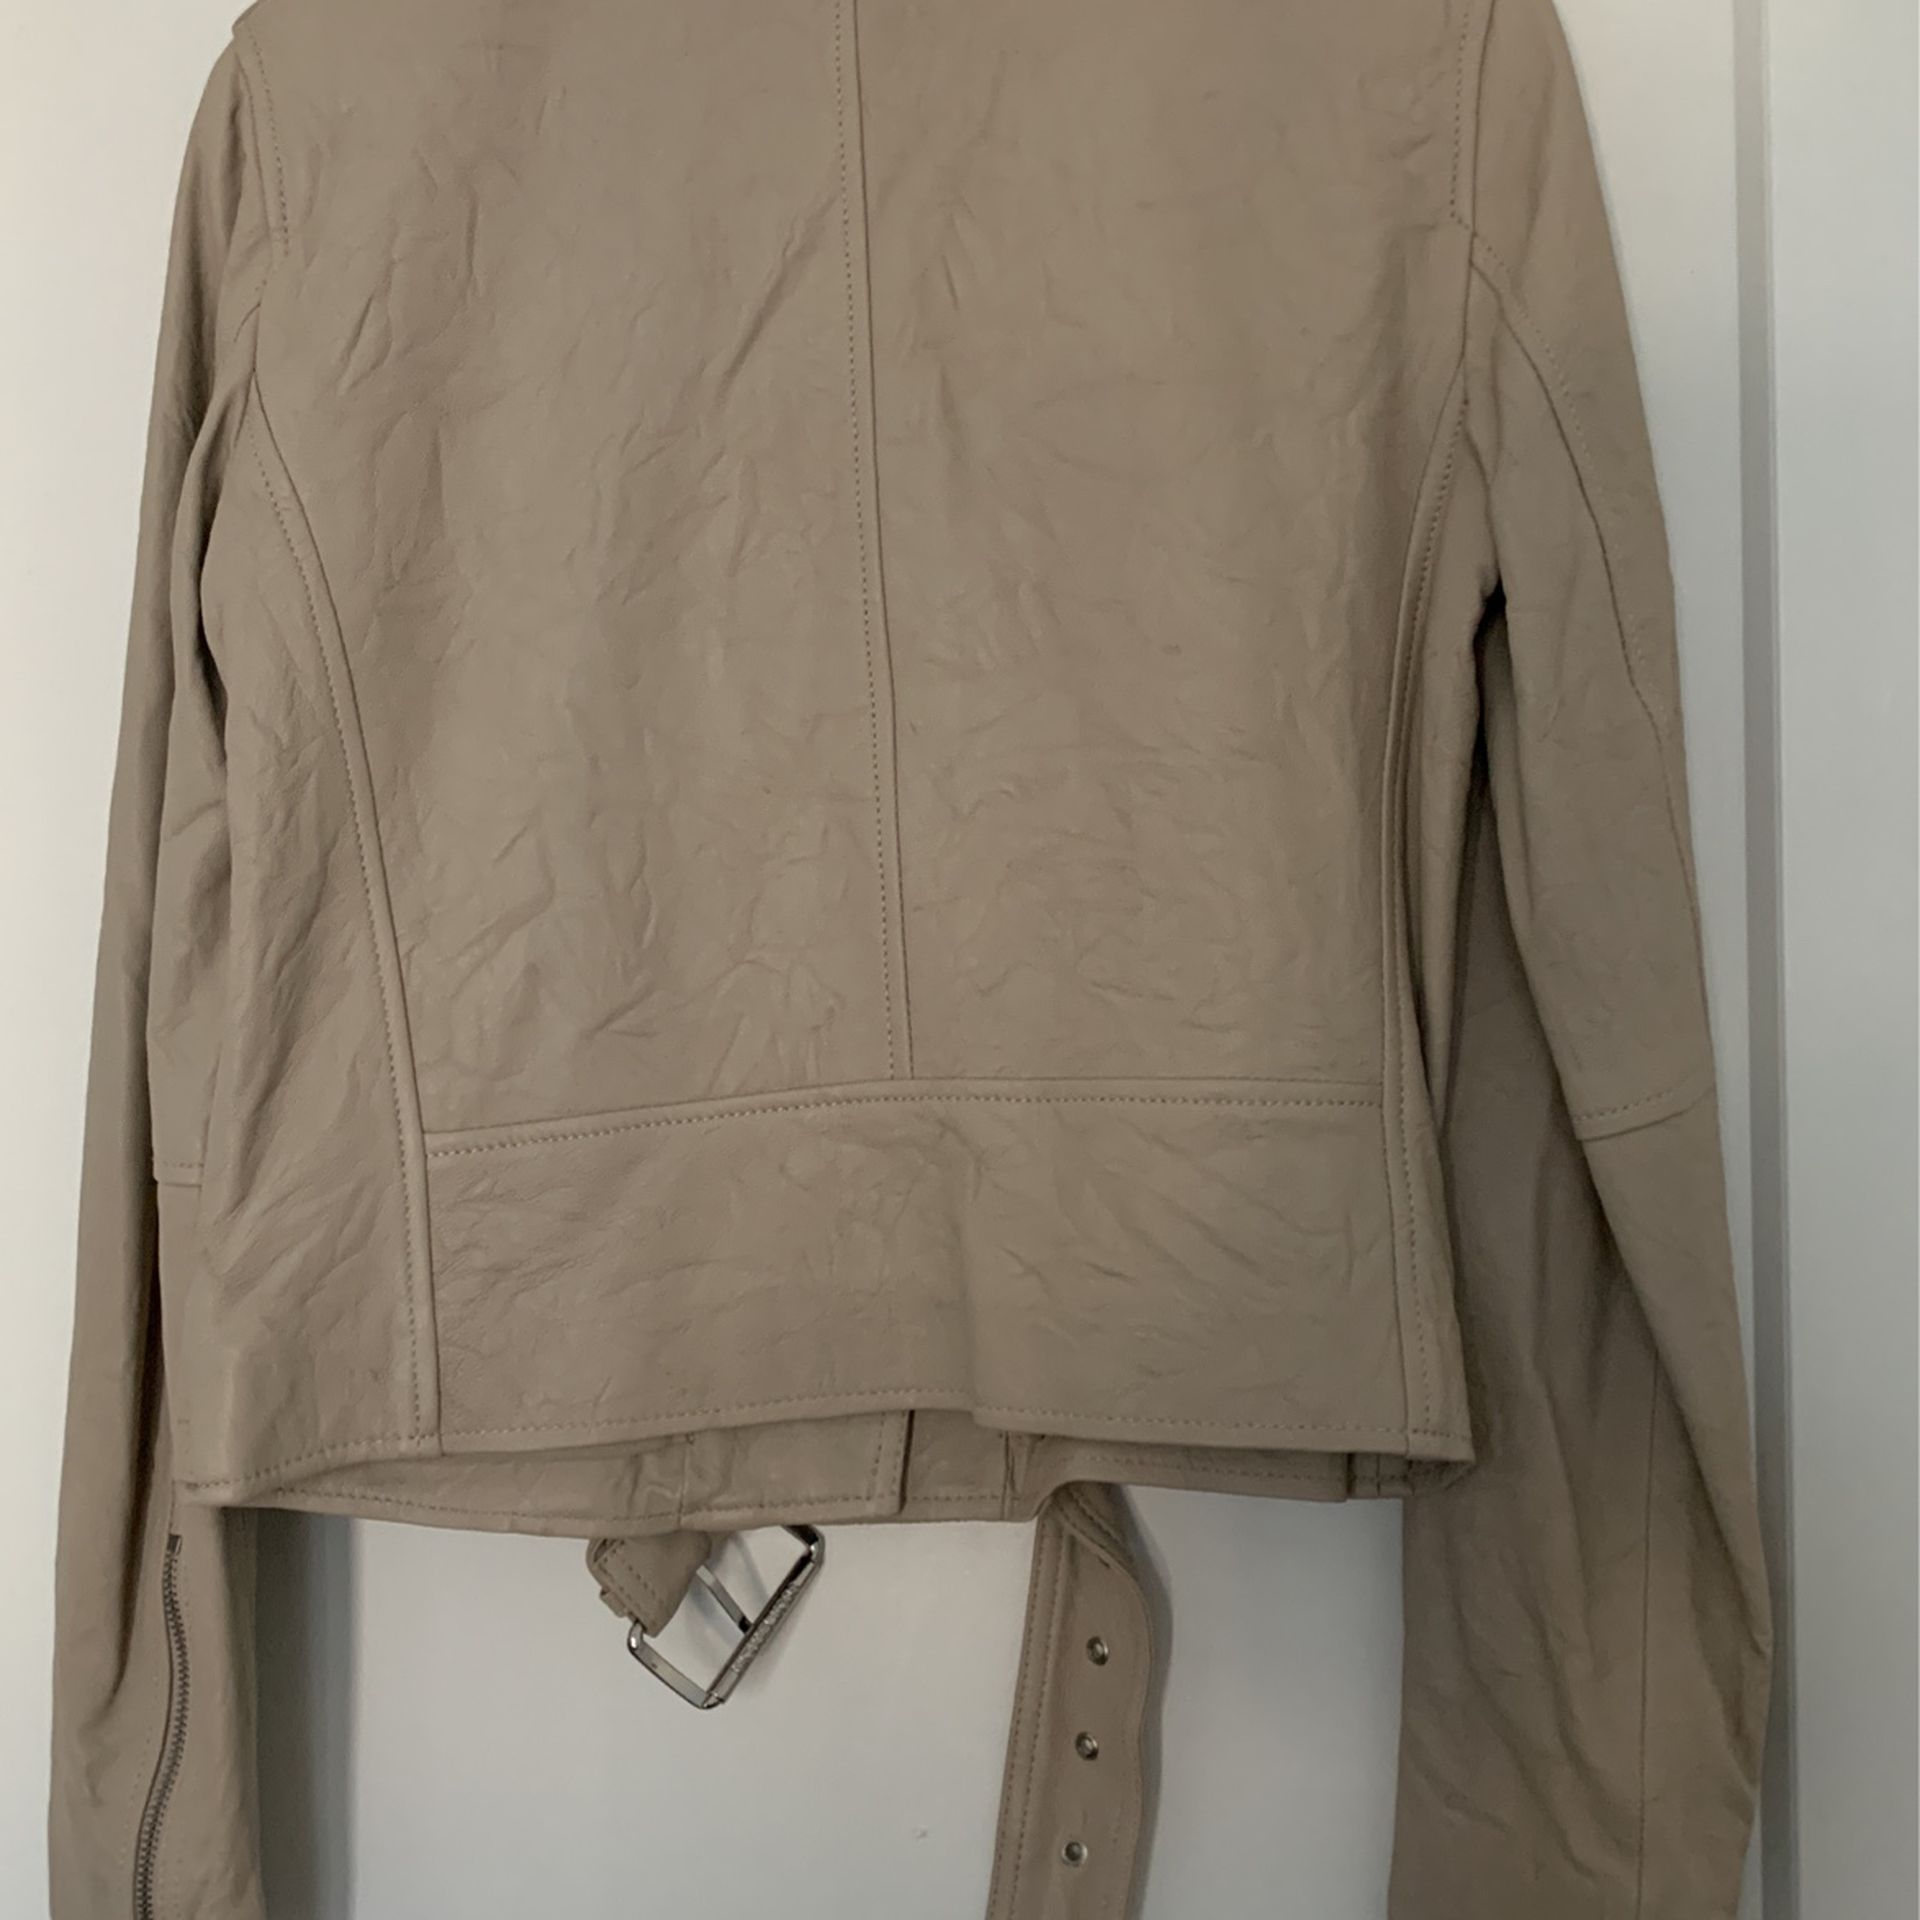 Michael Kors Crinkle Leather Jacket